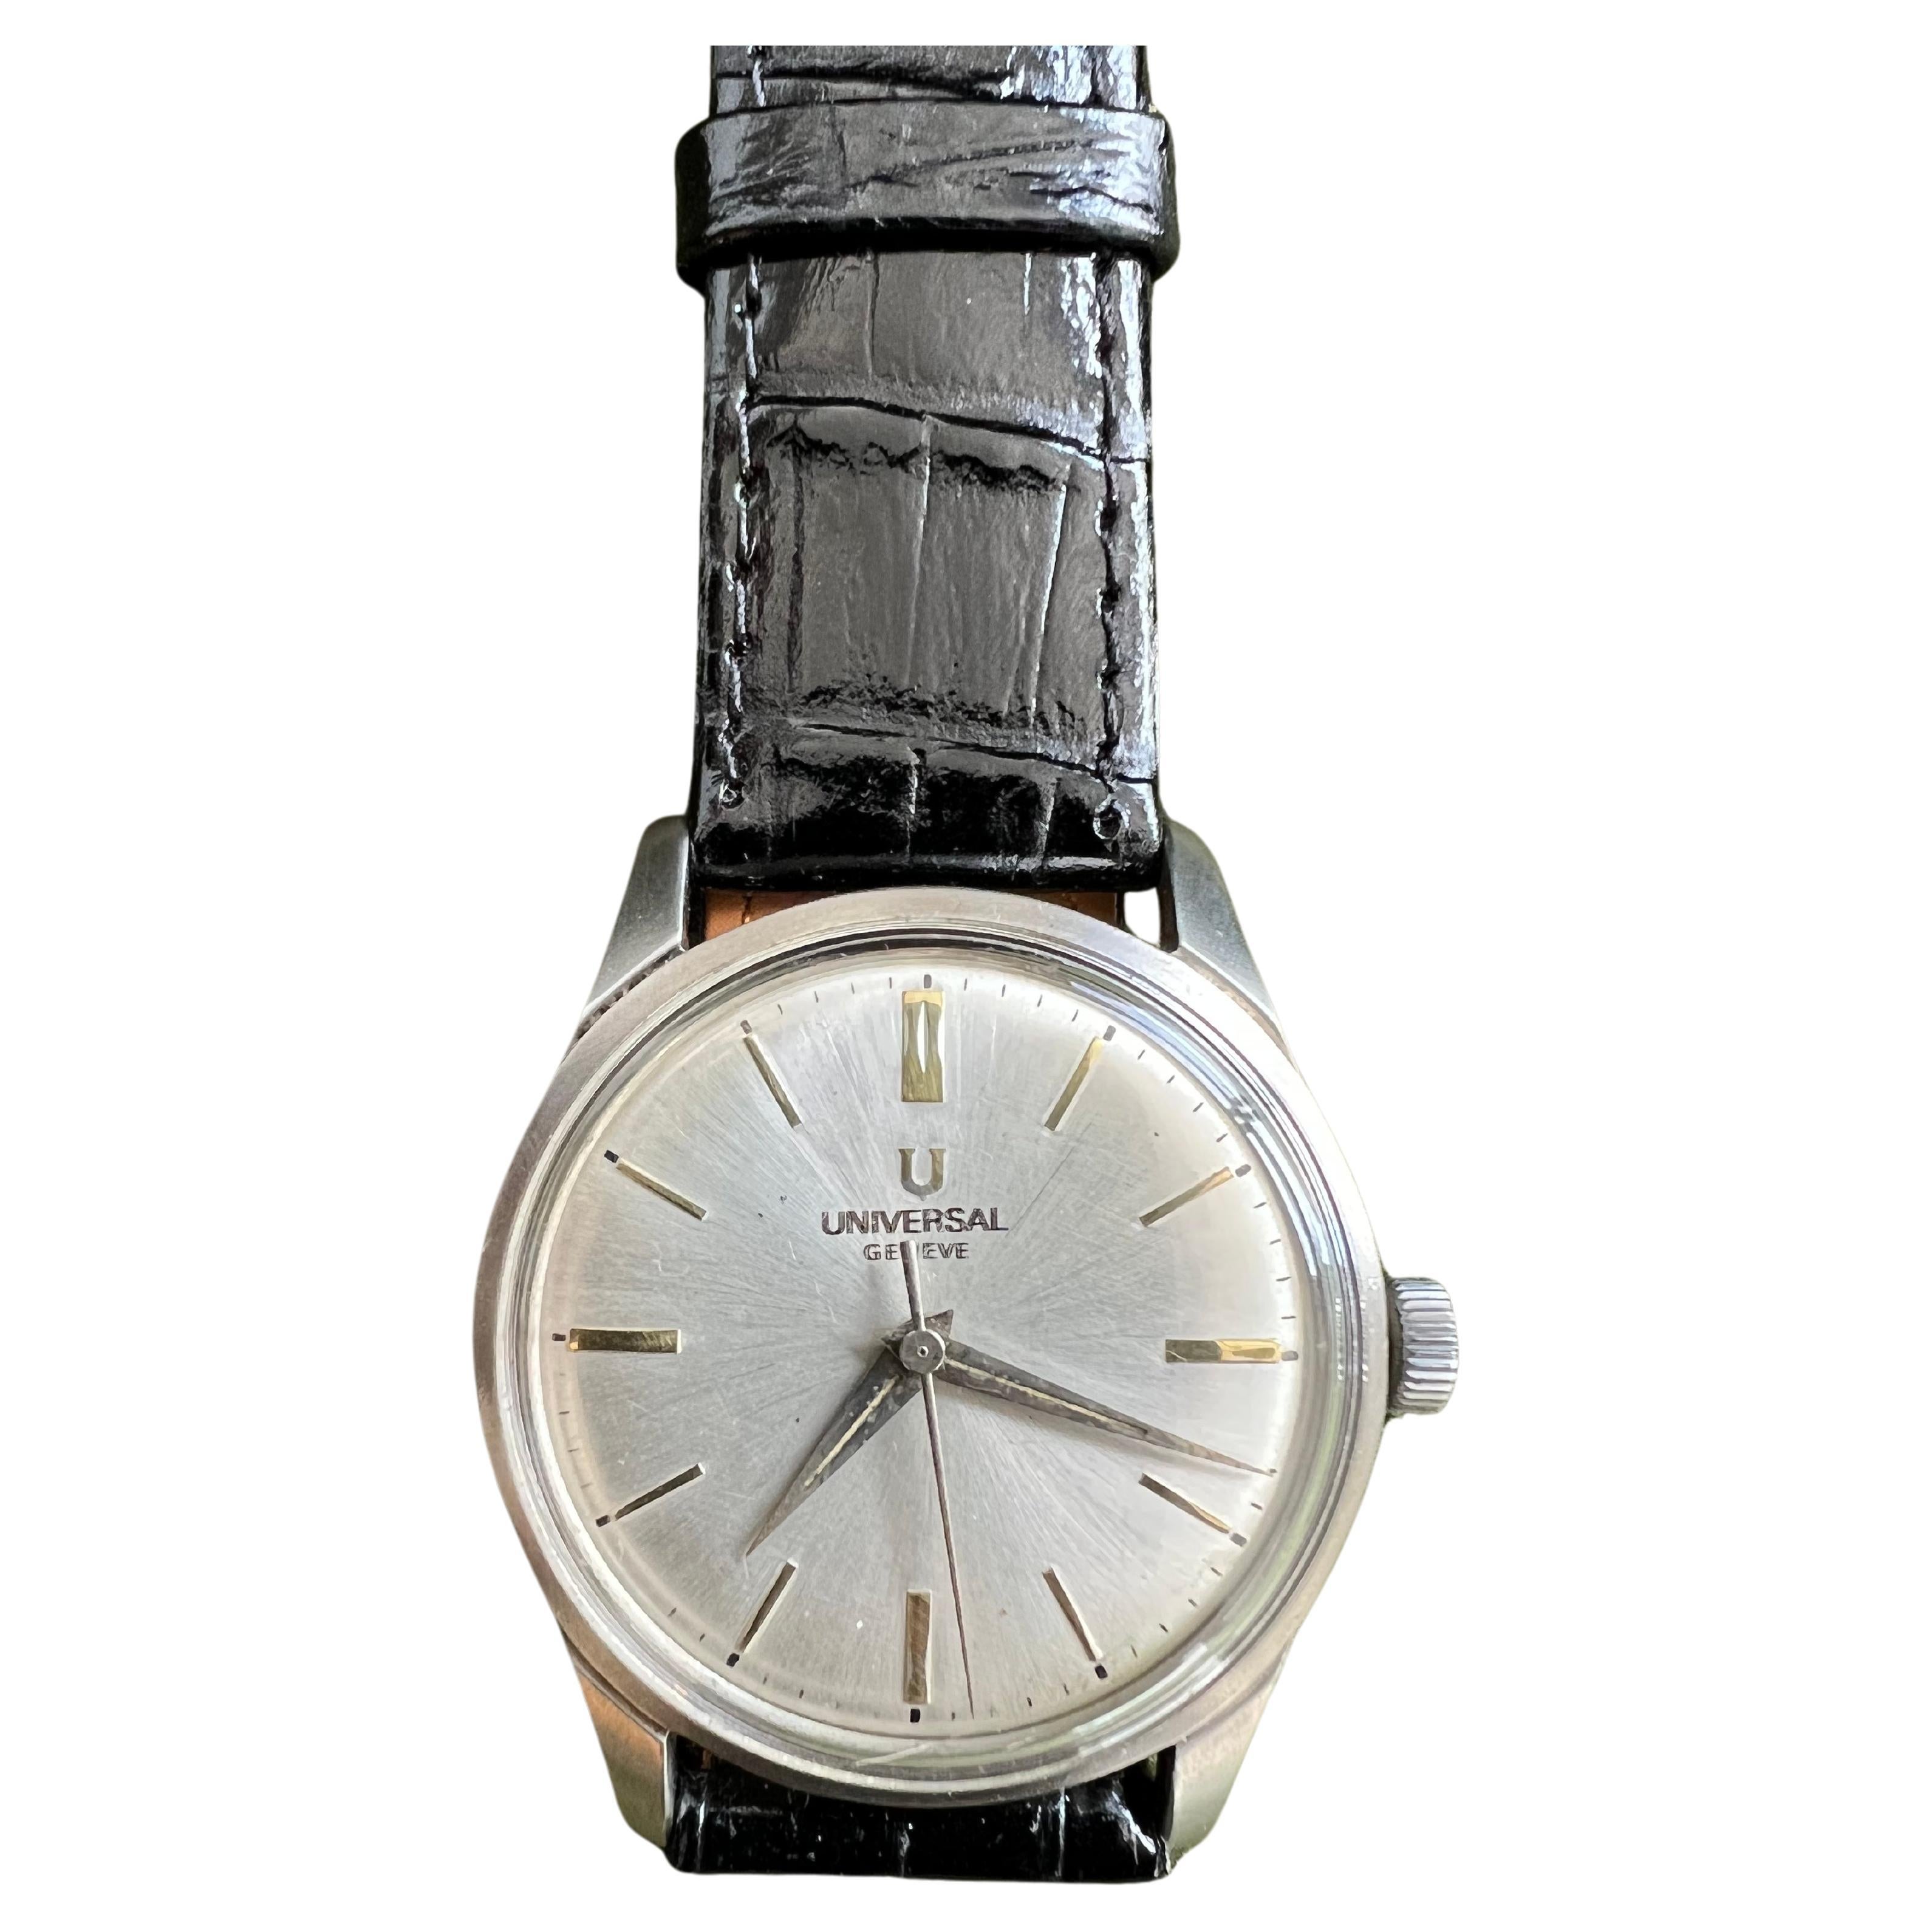 Une montre vestimentaire impeccable et de grande classe du début des années 60.
Face blanche et cadrans en or 
Cette montre présente les proportions classiques, tant en taille qu'en finesse, qu'une montre habillée se doit d'avoir. Le cadran, de